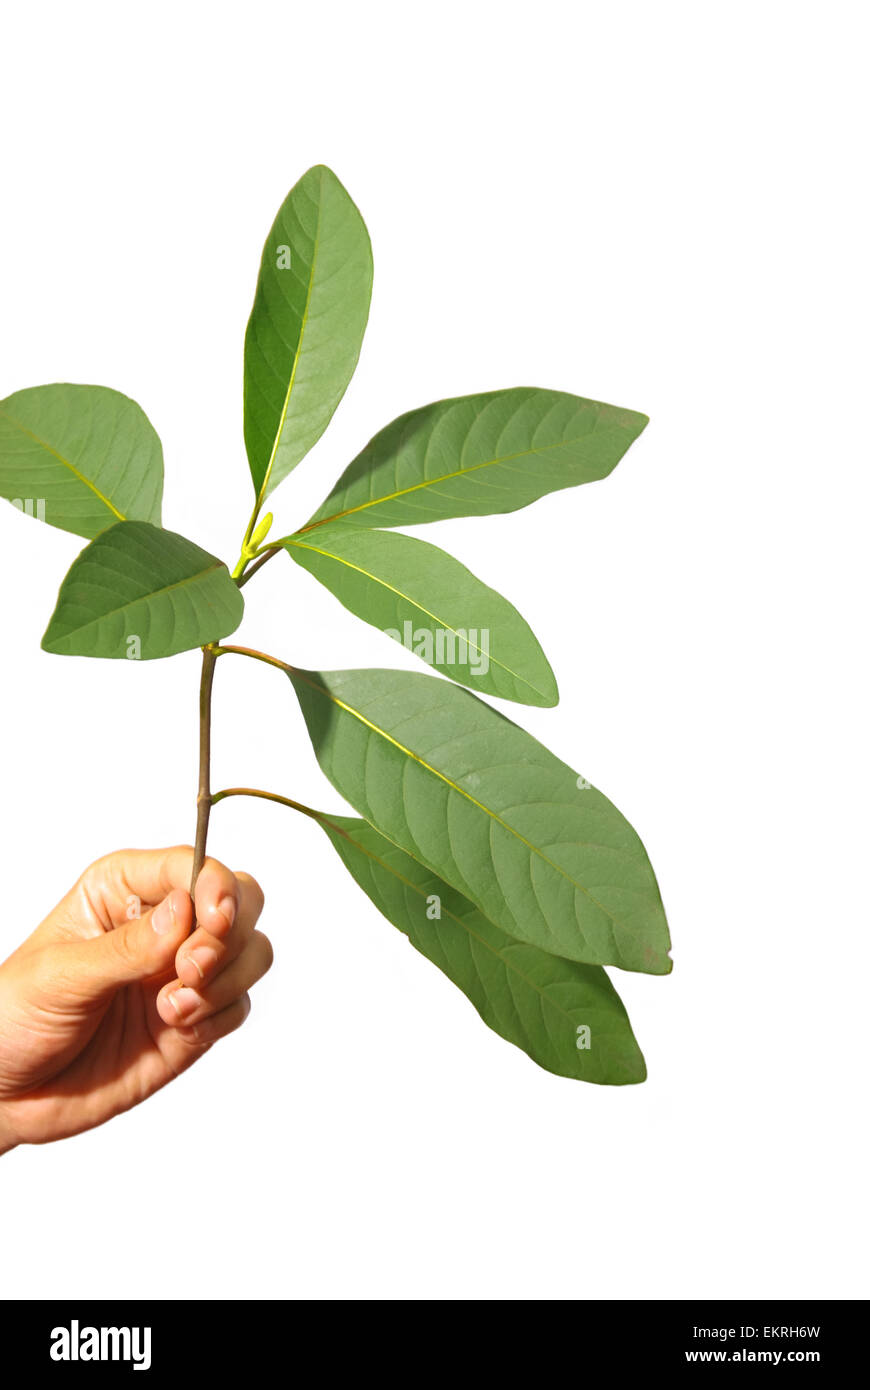 Blätter einer nicht identifizierten Chinin-Art (Cinchona) in Lembang, West Bandung, West Java, Indonesien. Chinin wird häufig zur Behandlung von Malaria verwendet. Stockfoto